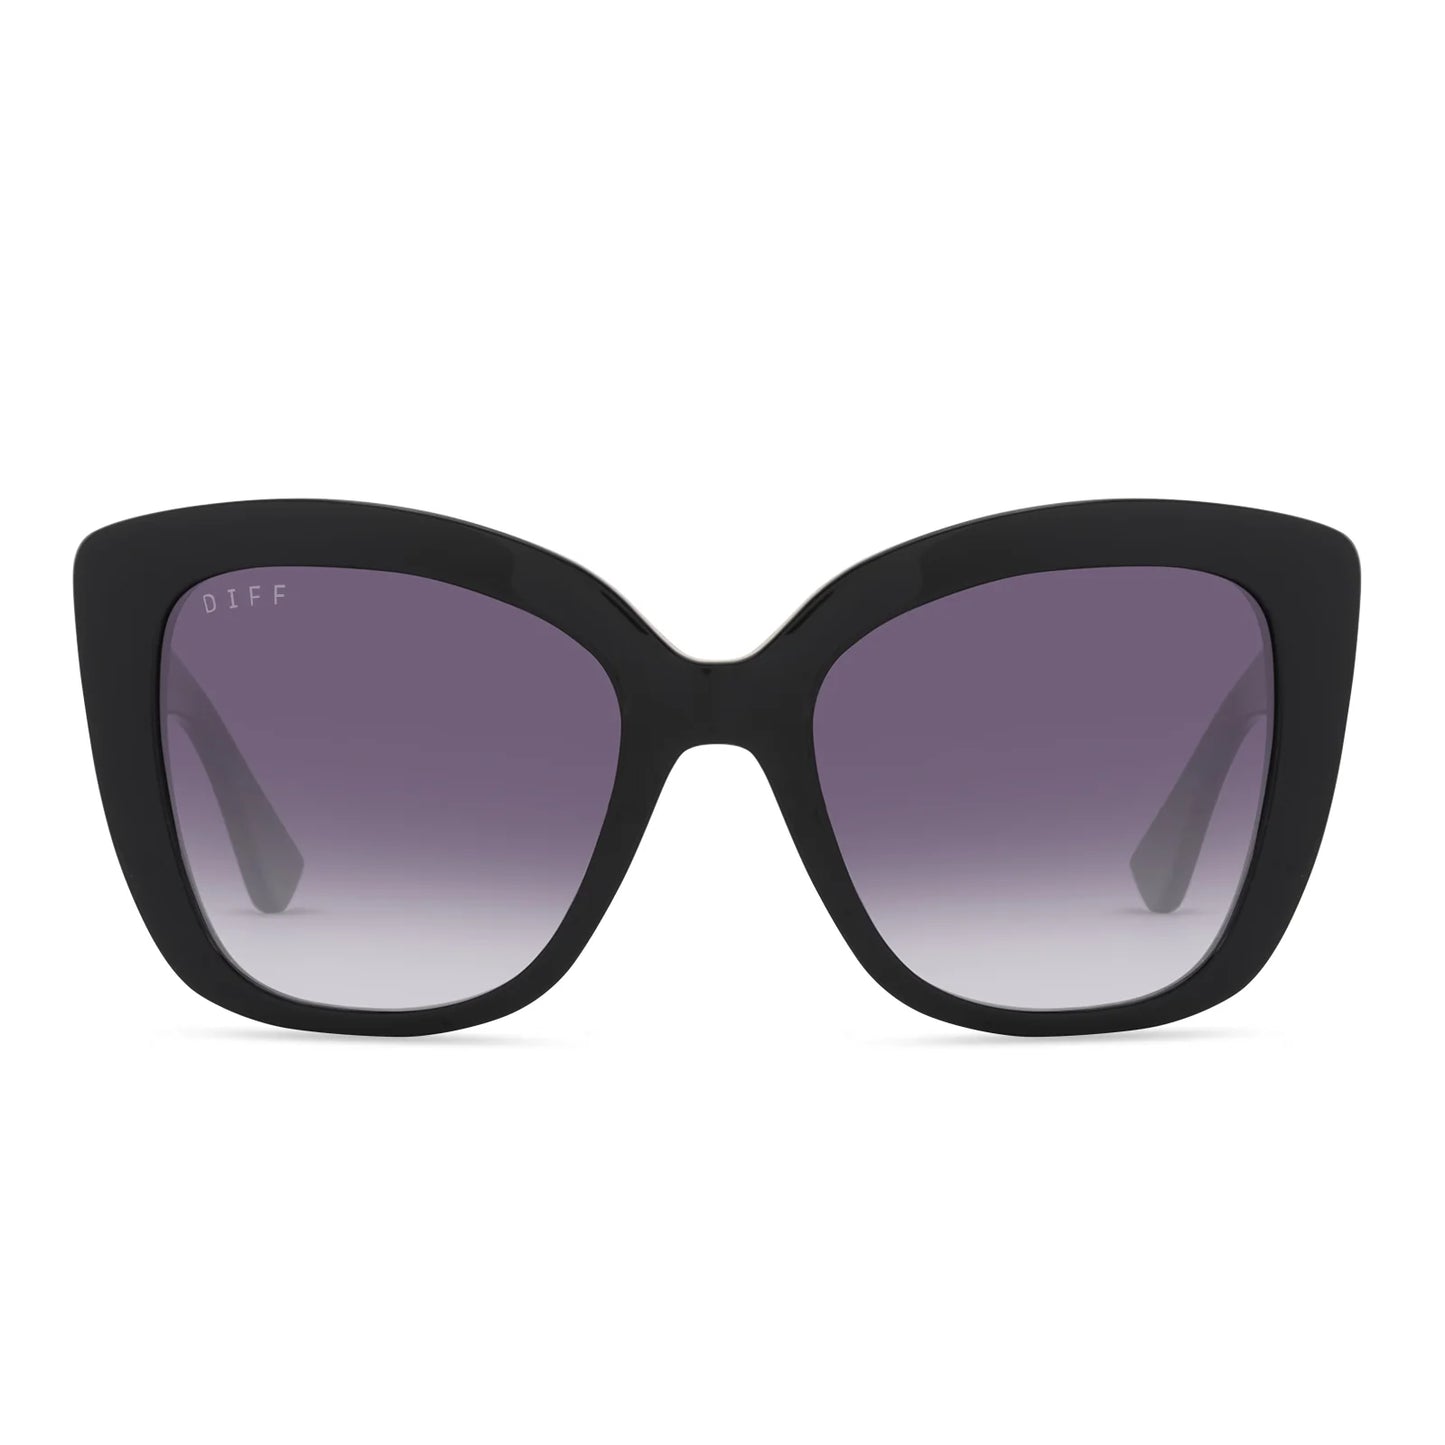 DIFF Aurora Black Grey Gradient Sunglasses